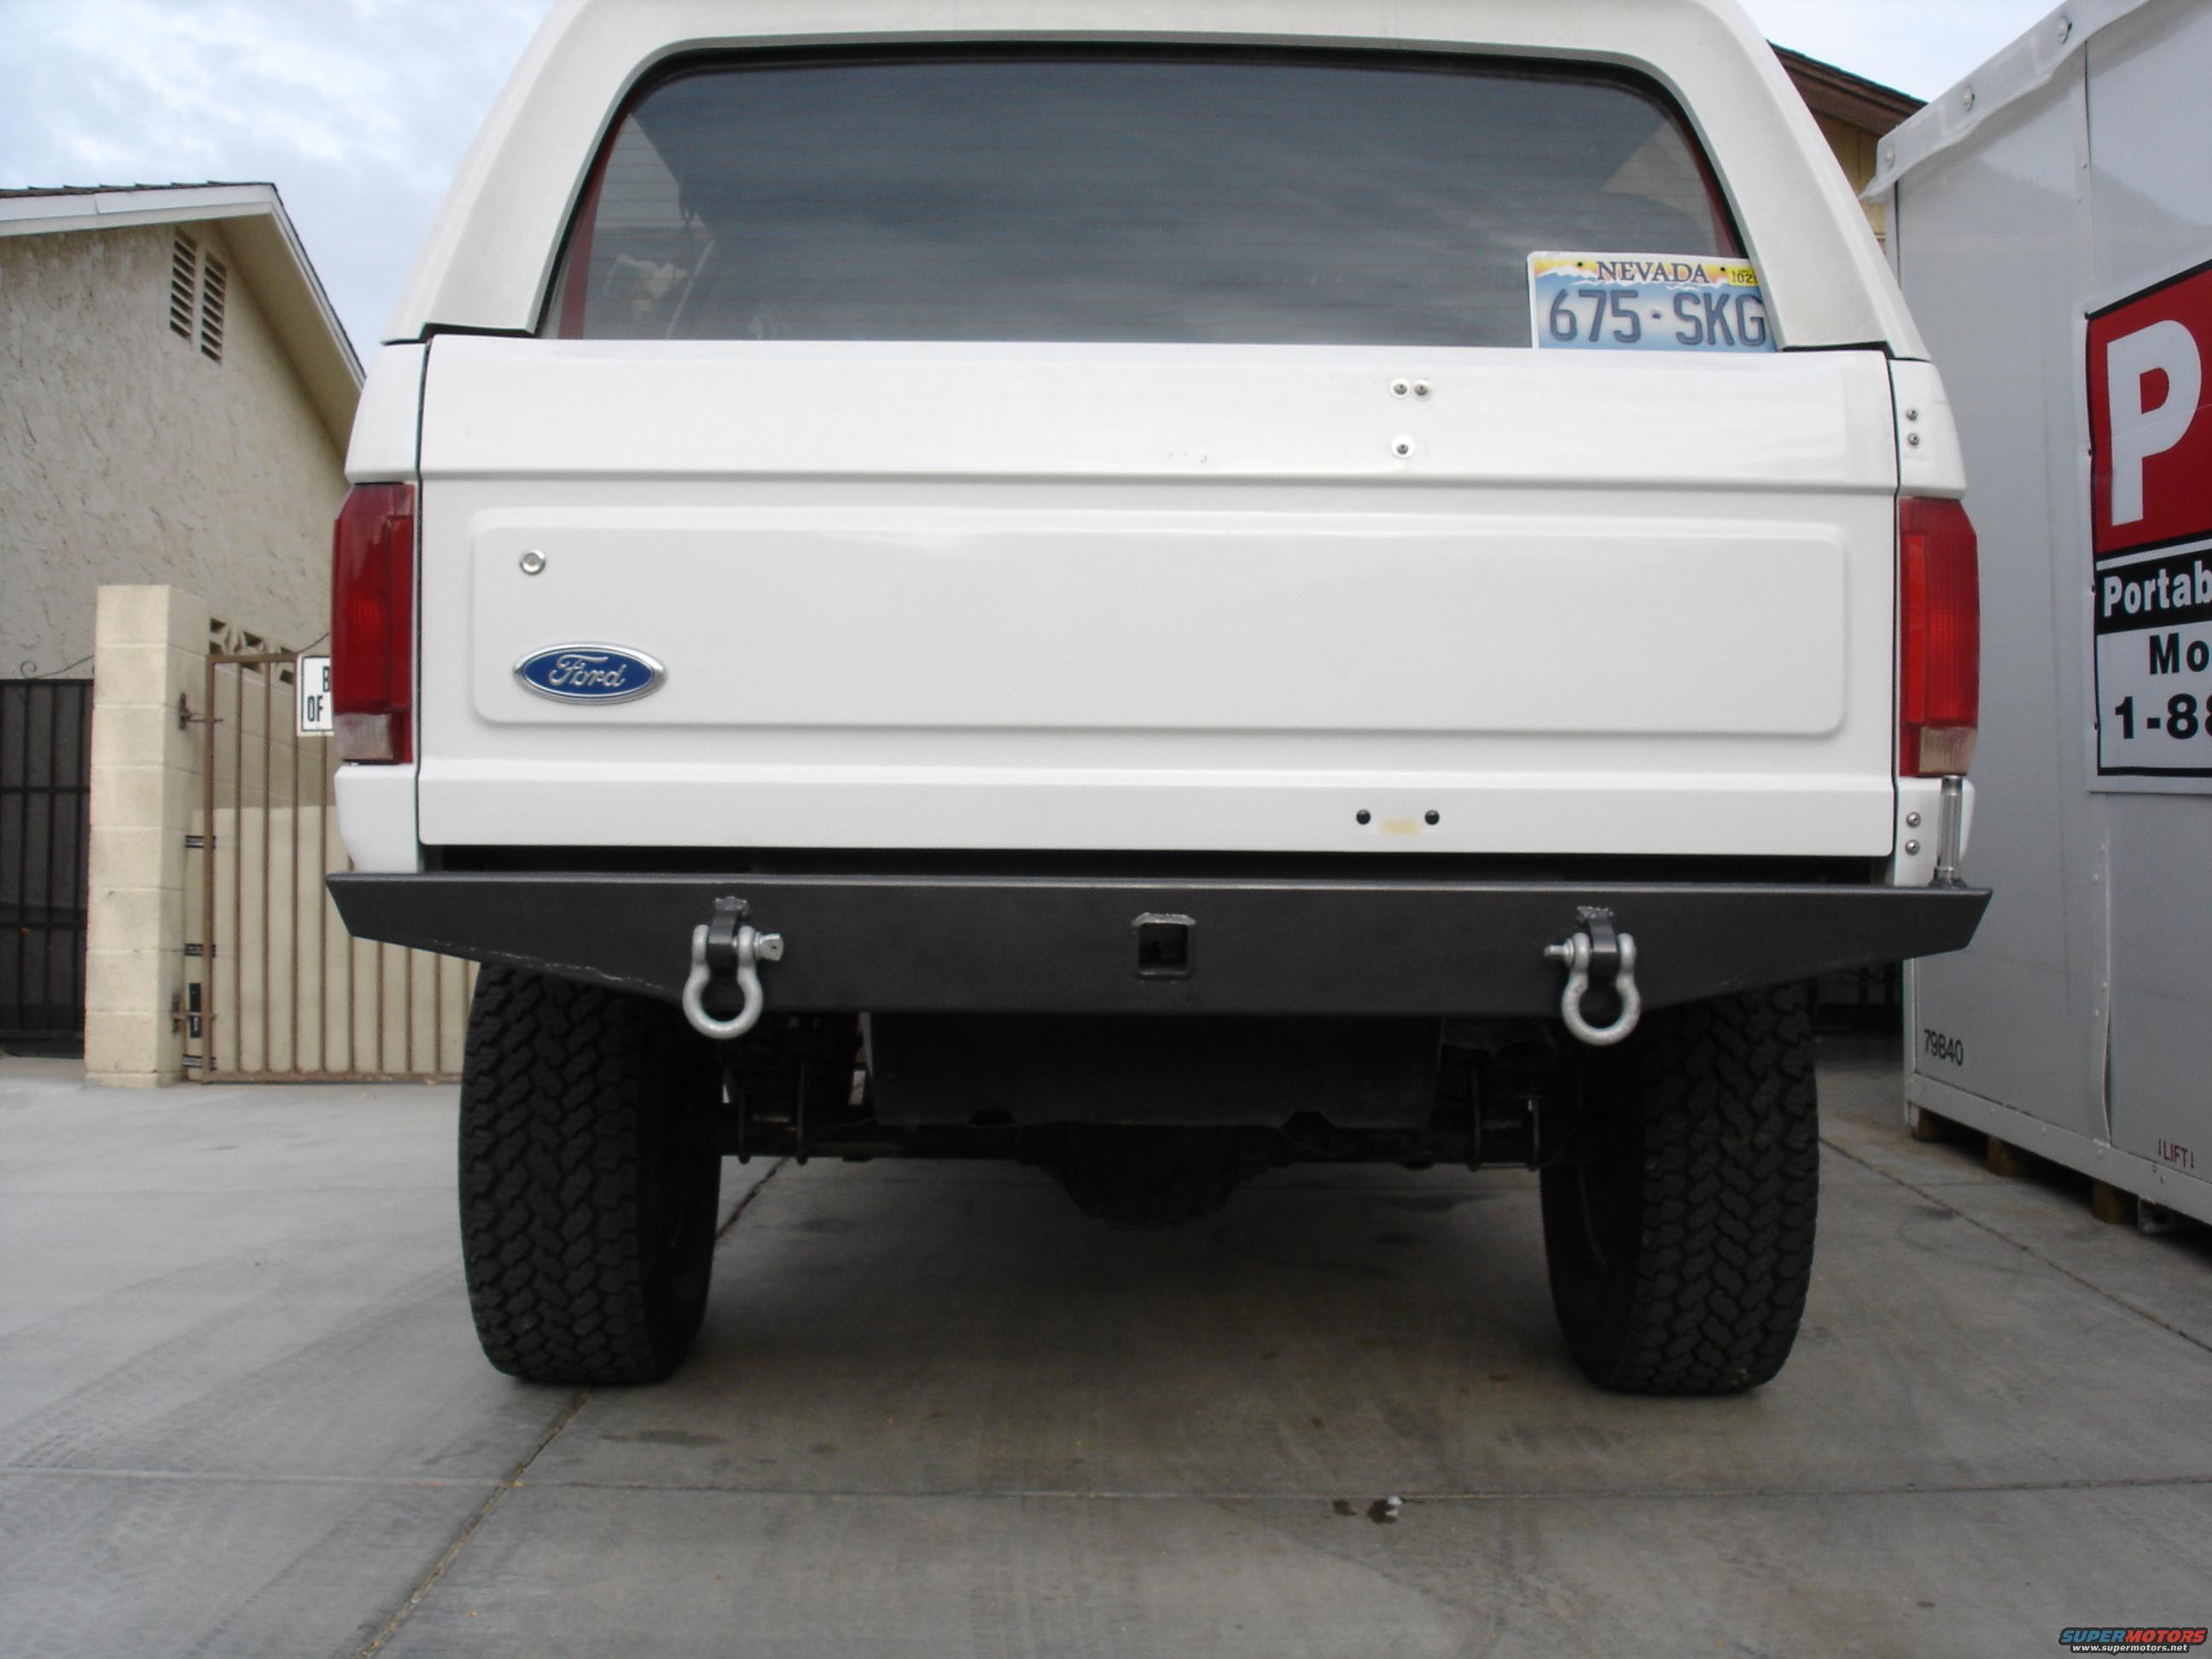 1994 Ford bronco rear bumper #3